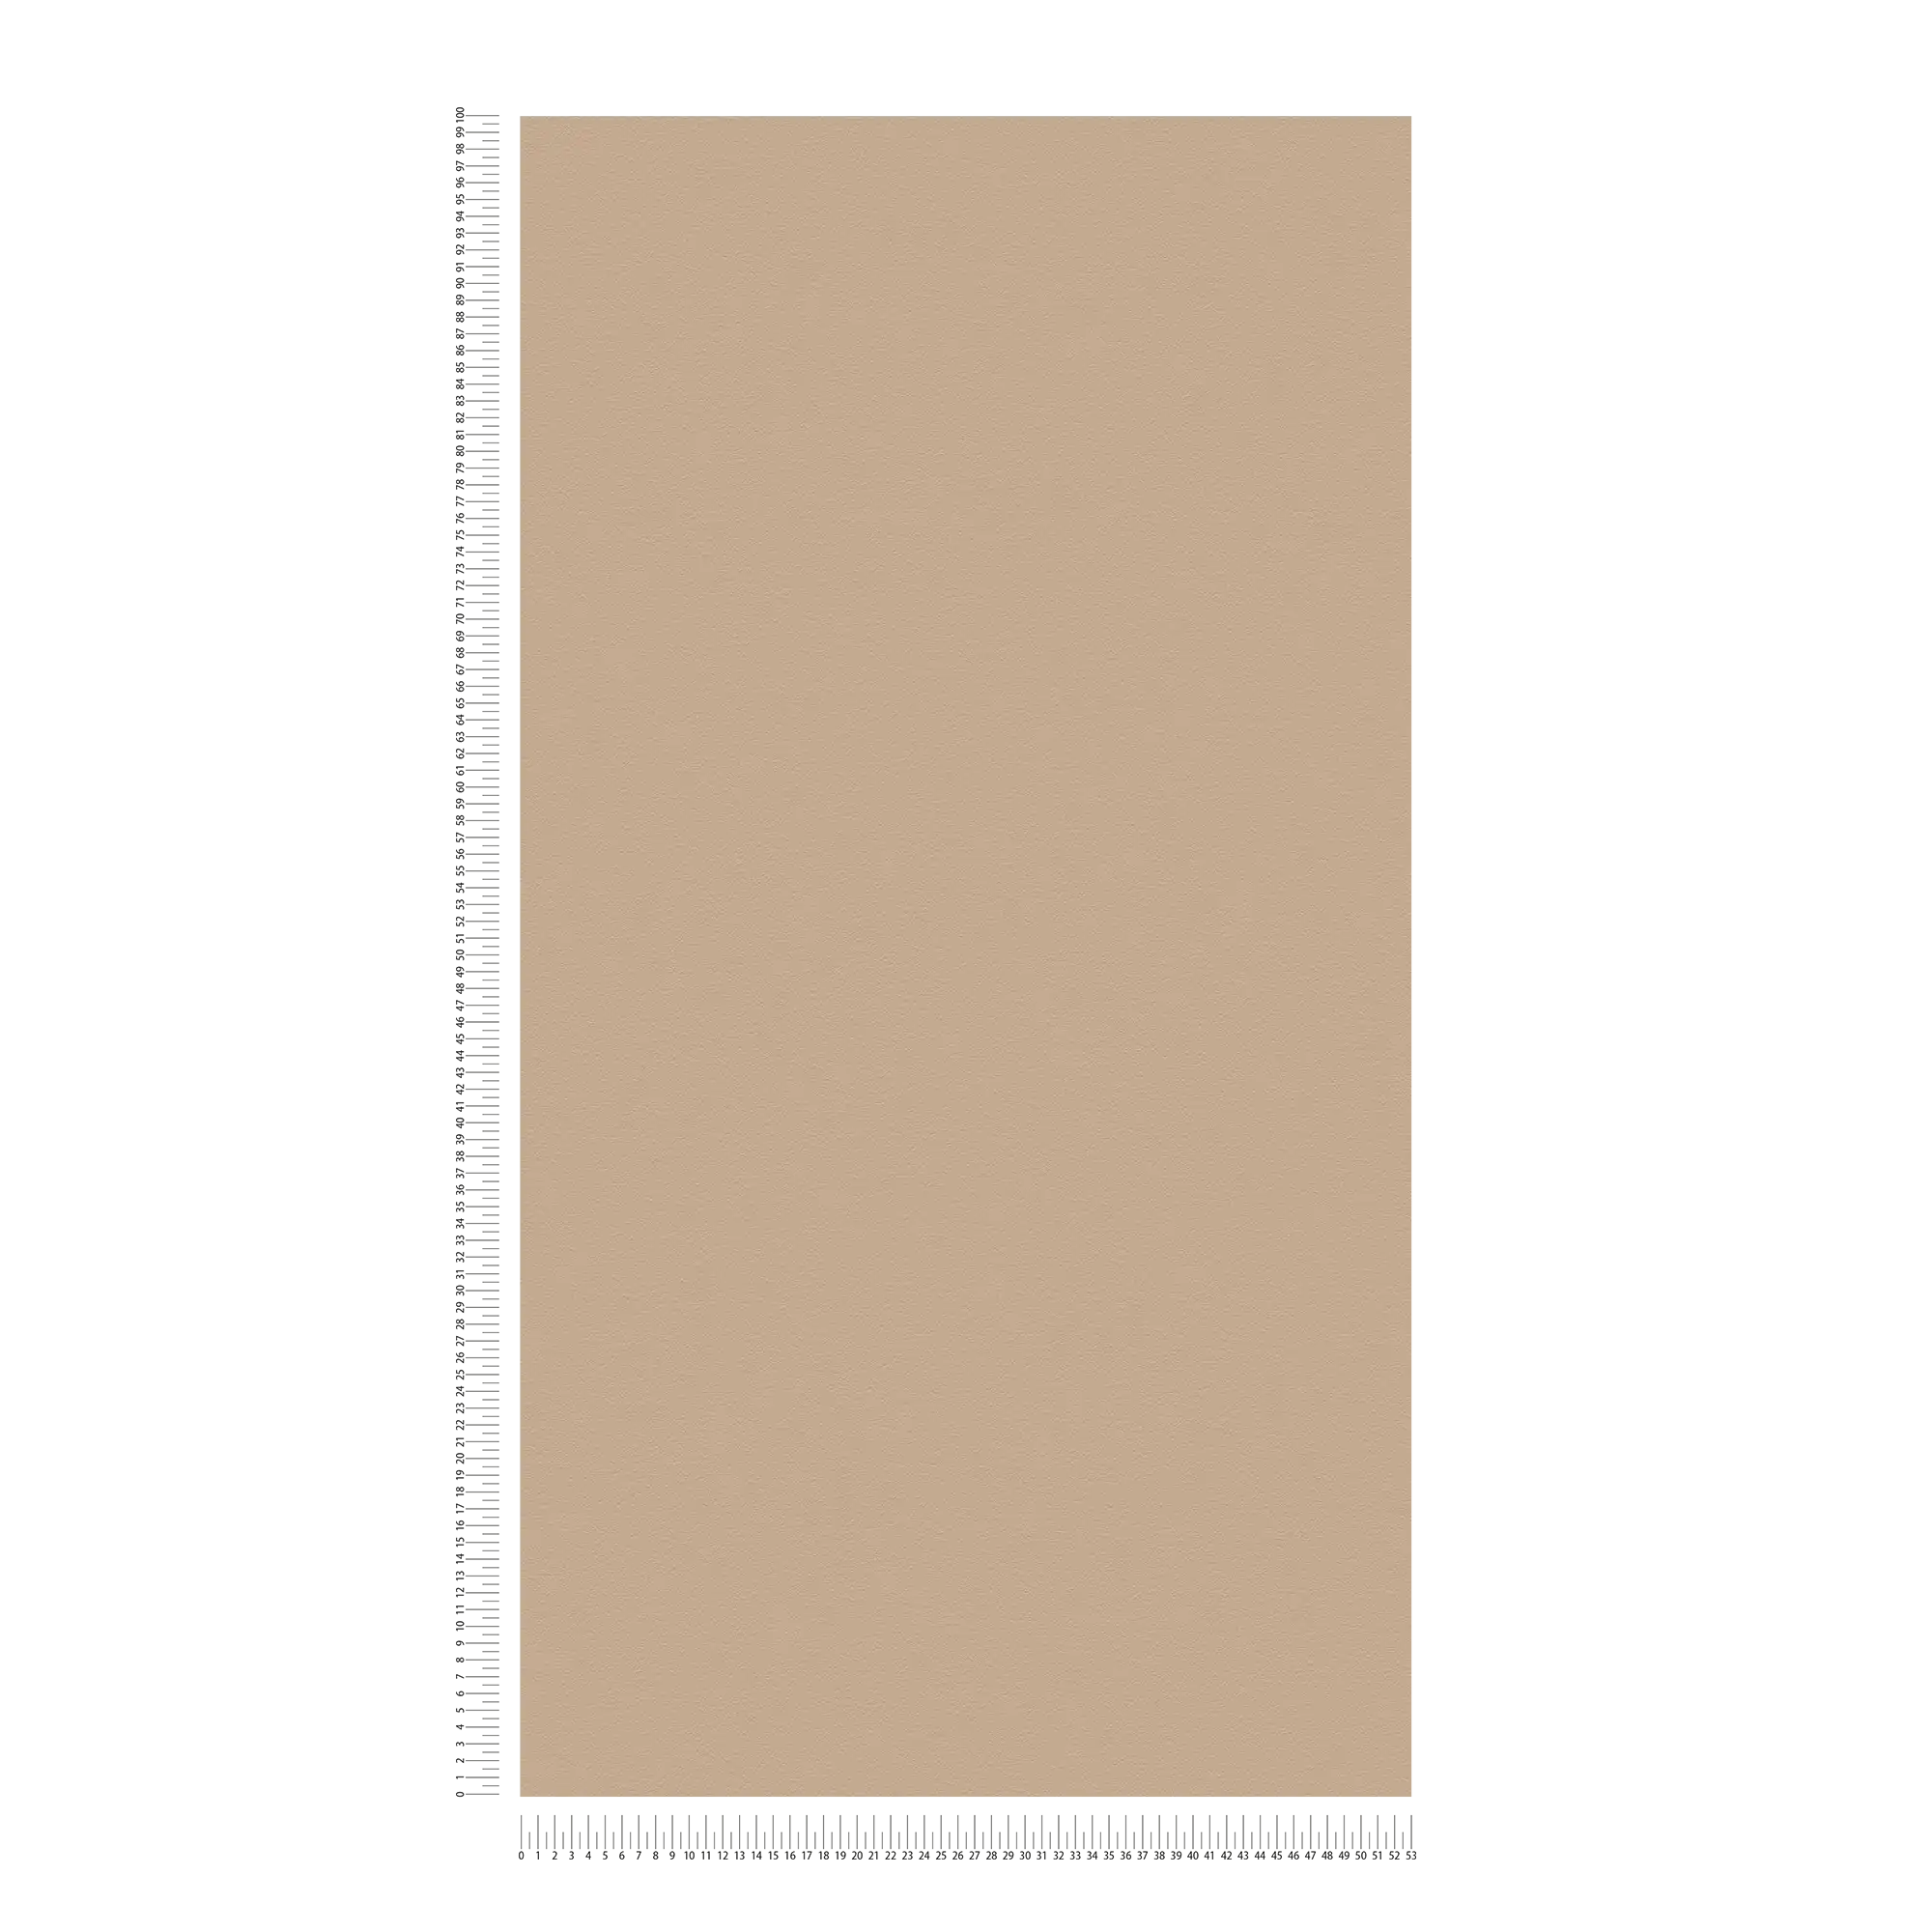             Papier peint uni marron clair avec surface lisse - beige, marron
        